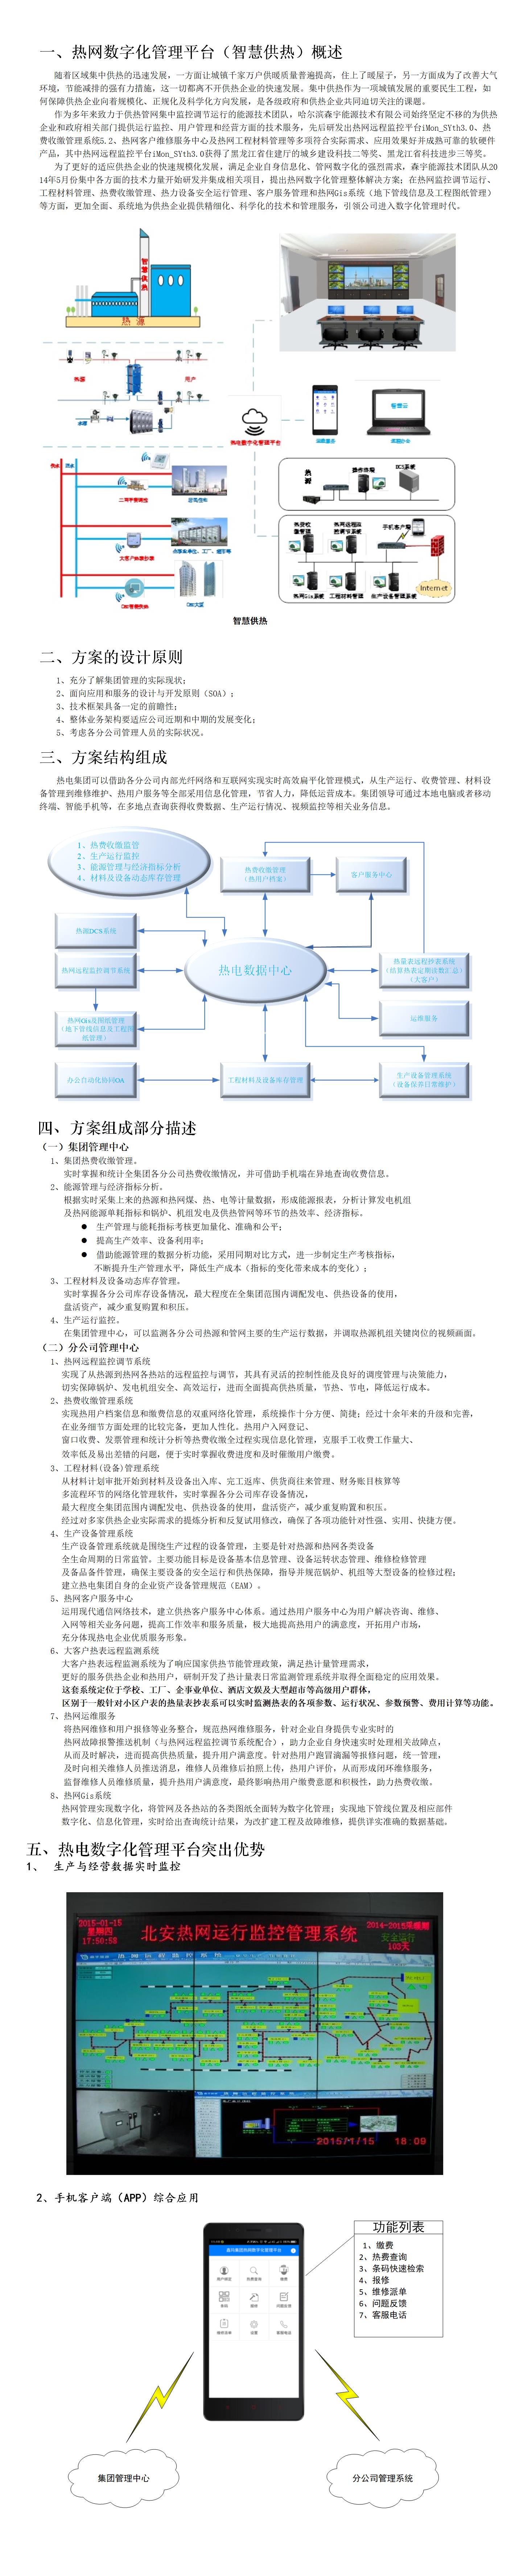 圖素 - 熱電數字化管理平台.jpg